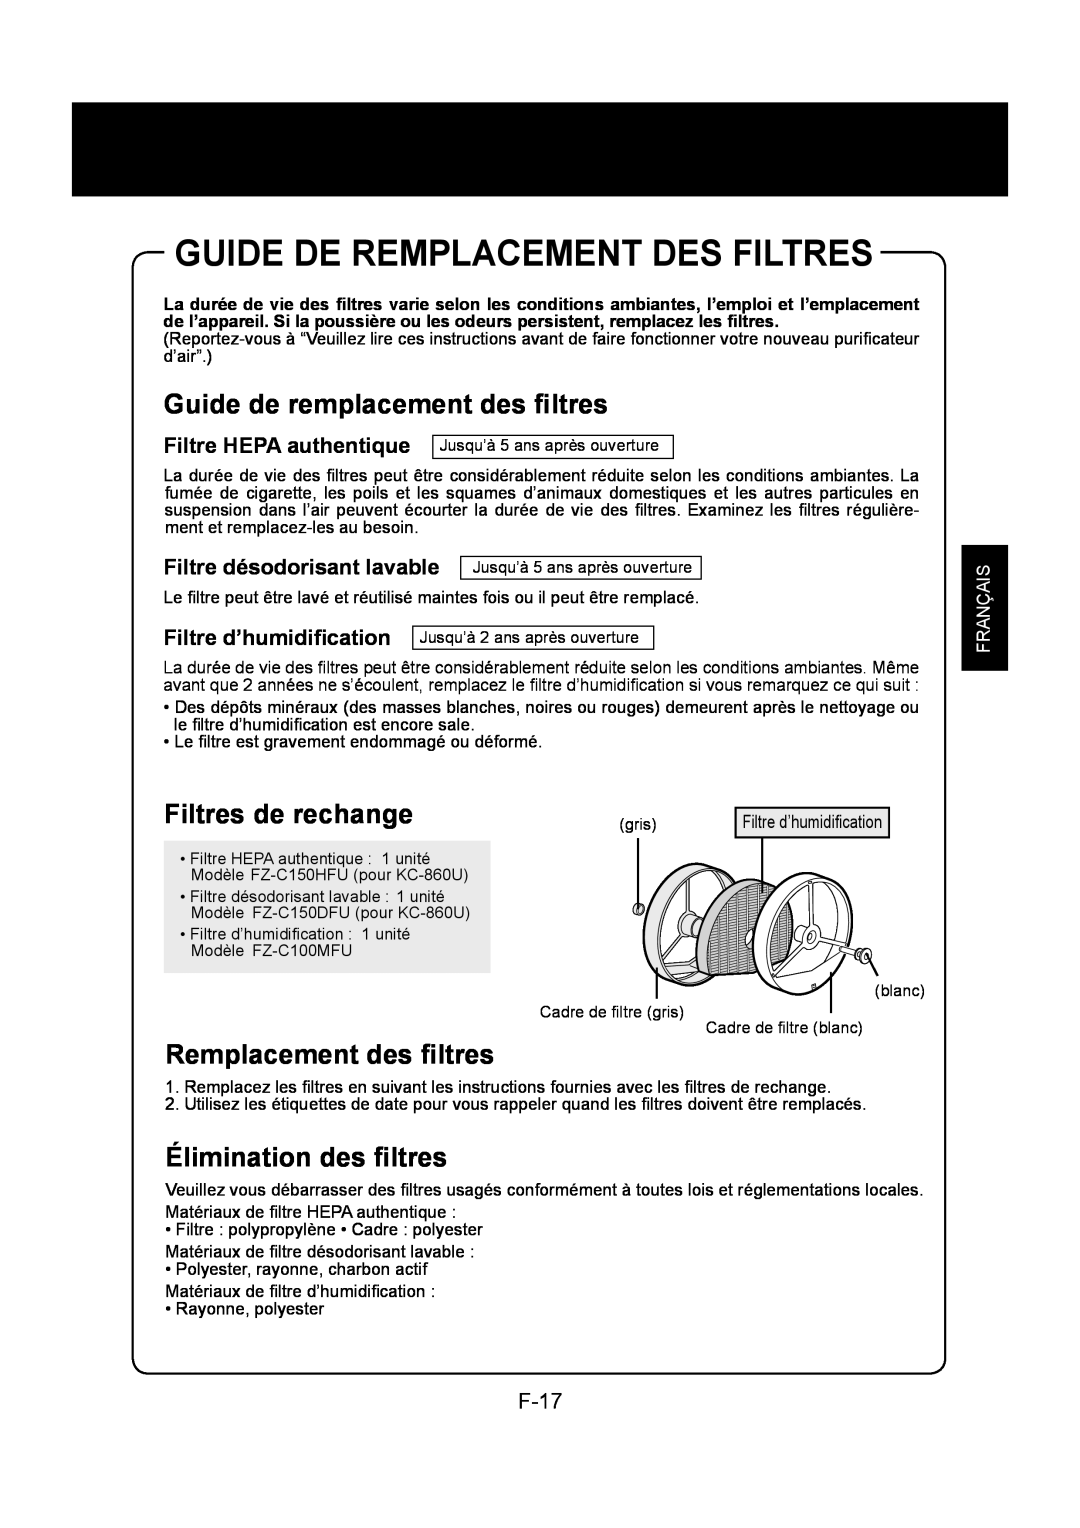 Sharp KC-860U Guide De Remplacement Des Filtres, Guide de remplacement des ﬁltres, Filtres de rechange, F-17, Français 